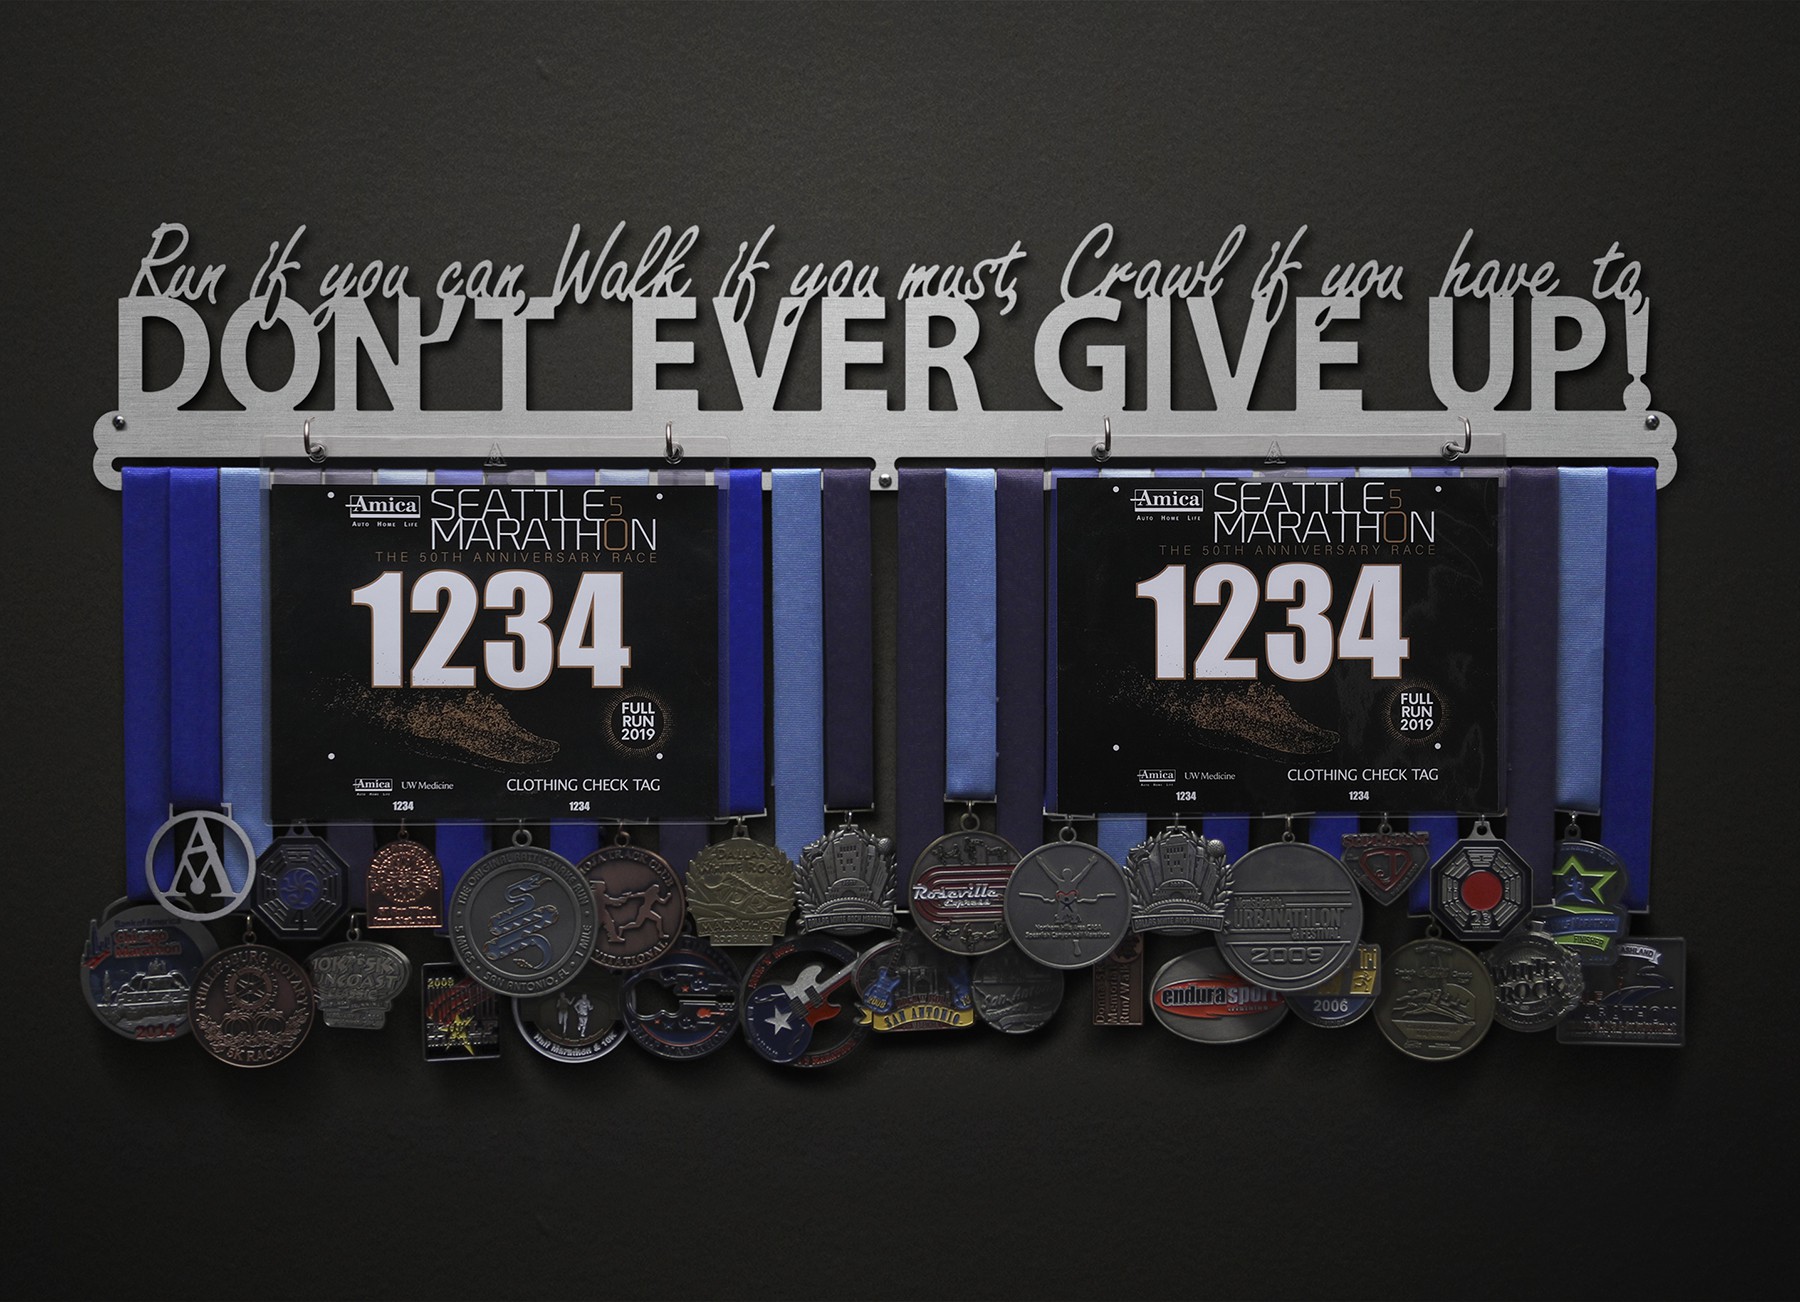 Run, Walk, Crawl - Don't Ever Give Up! Bib and Medal Display